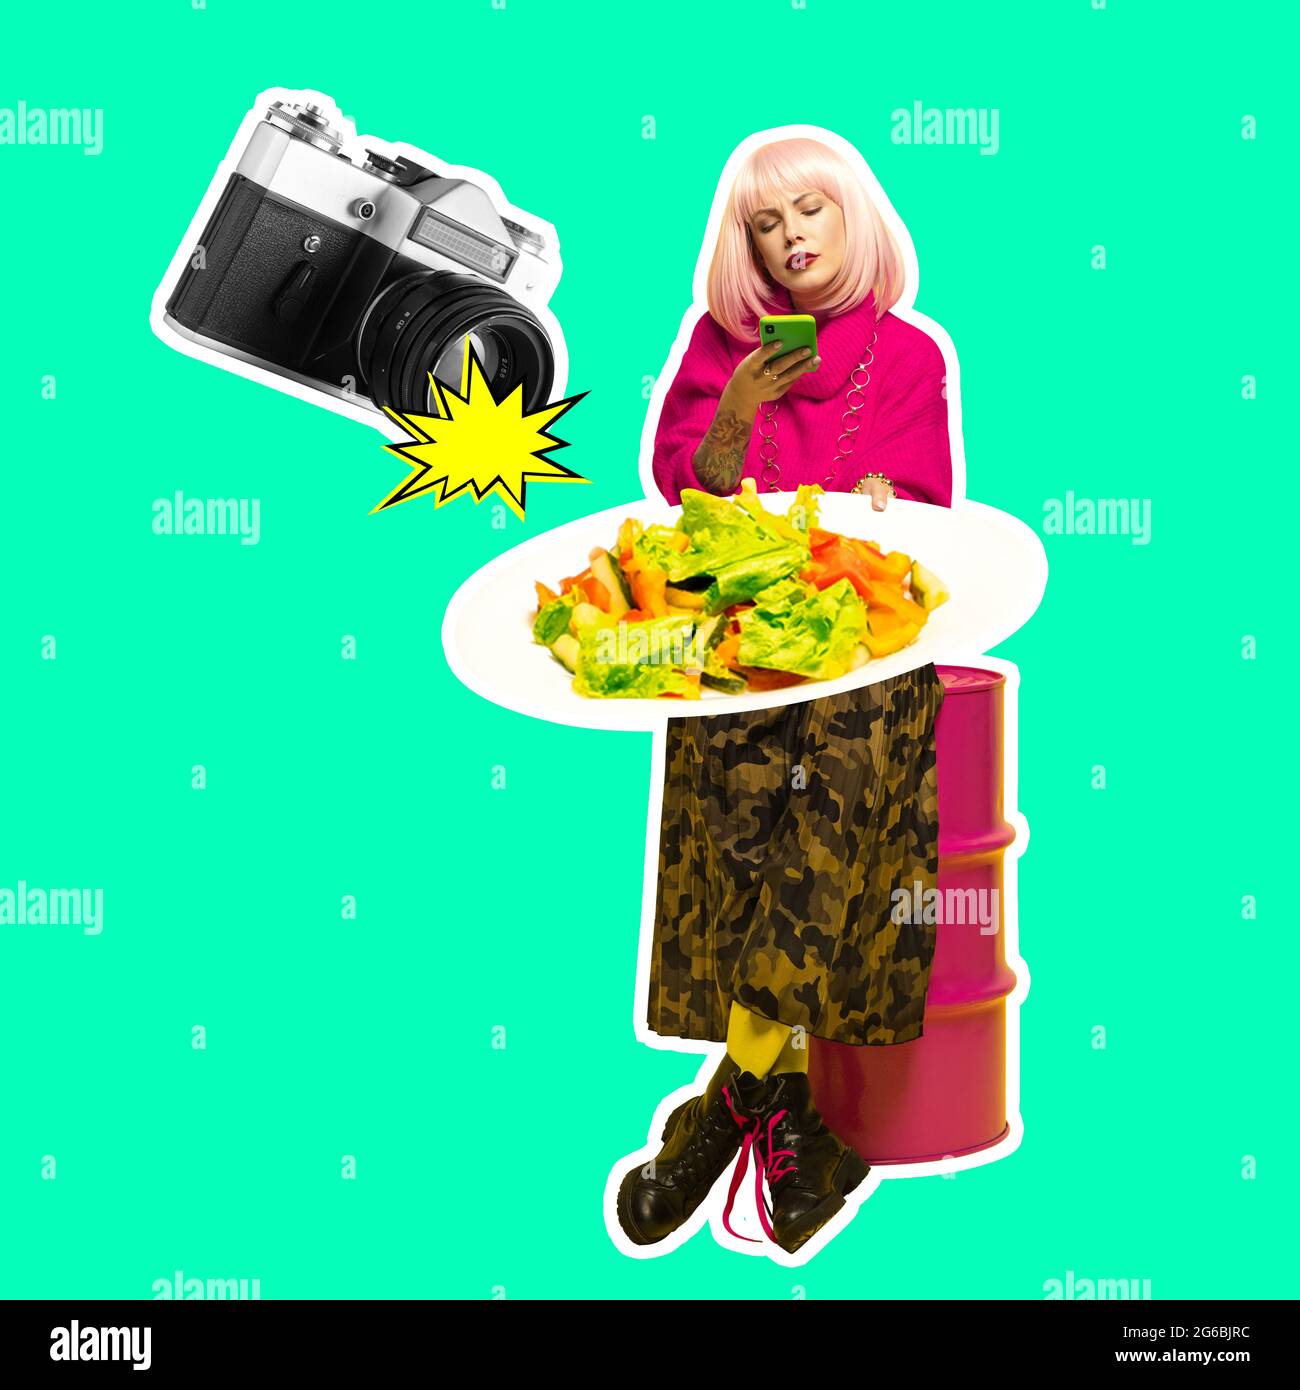 Jeune femme, blogueur de nourriture photographie de nourriture isolée sur fond bleu néon. Collage d'art contemporain et design moderne. Concept d'idée, inspiration Banque D'Images